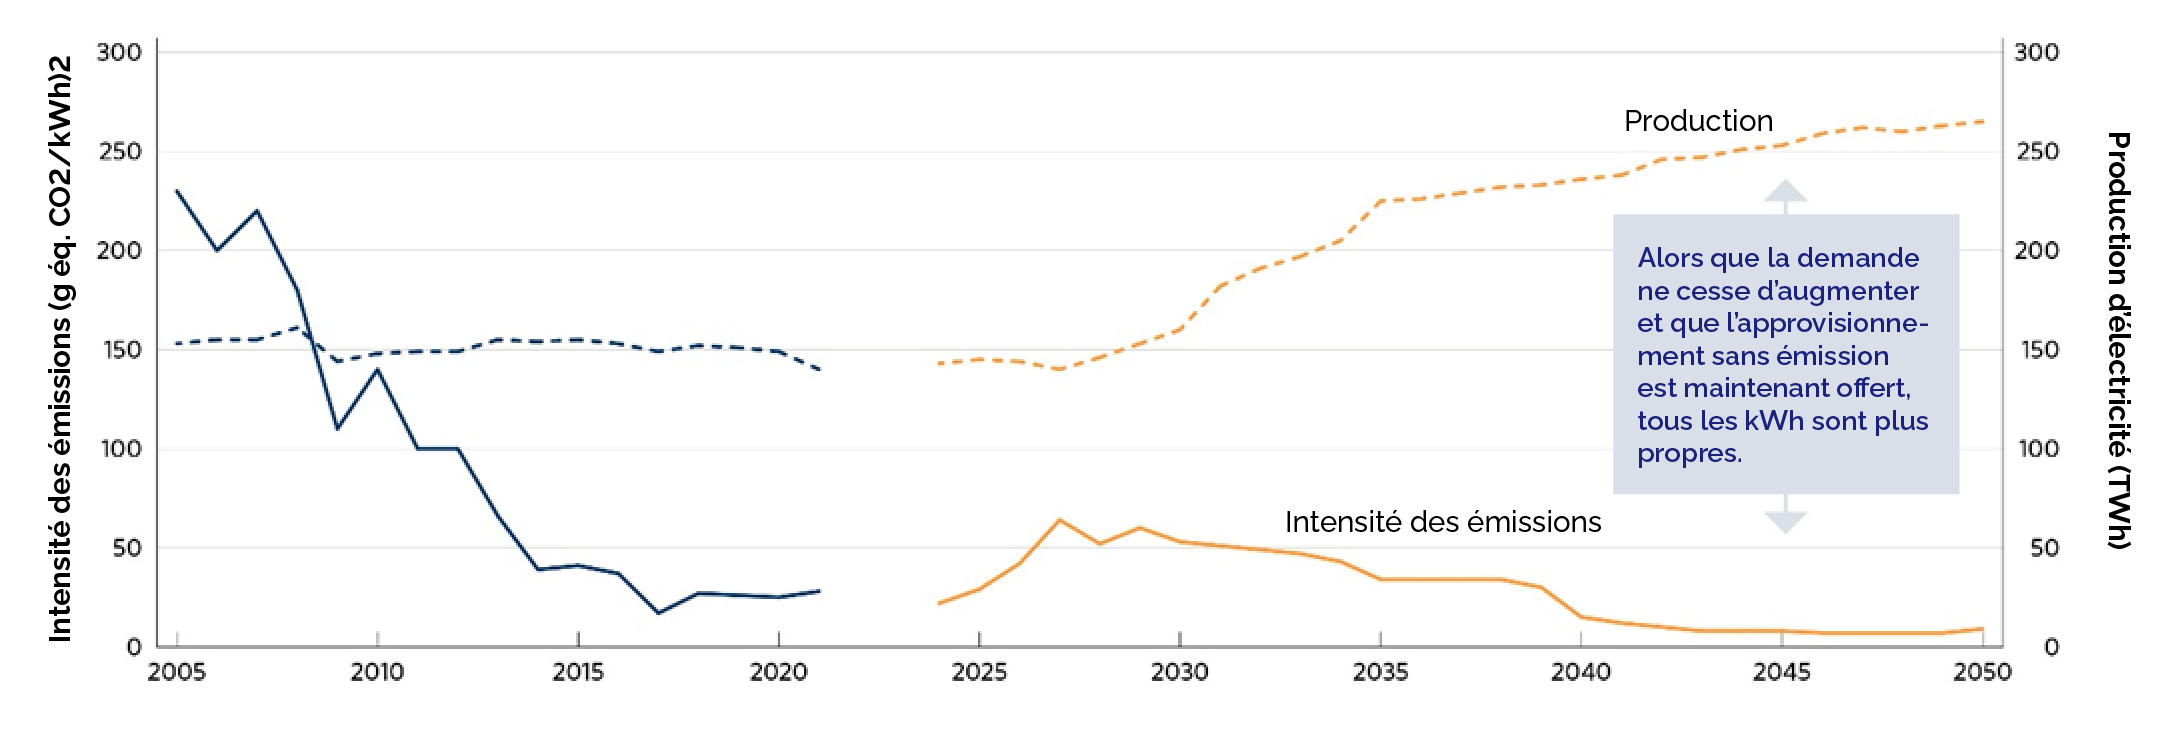 Graphique montrant la diminution de l'intensité des émissions et l'augmentation de la production d'électricité en Ontario de 2005 à 2050.